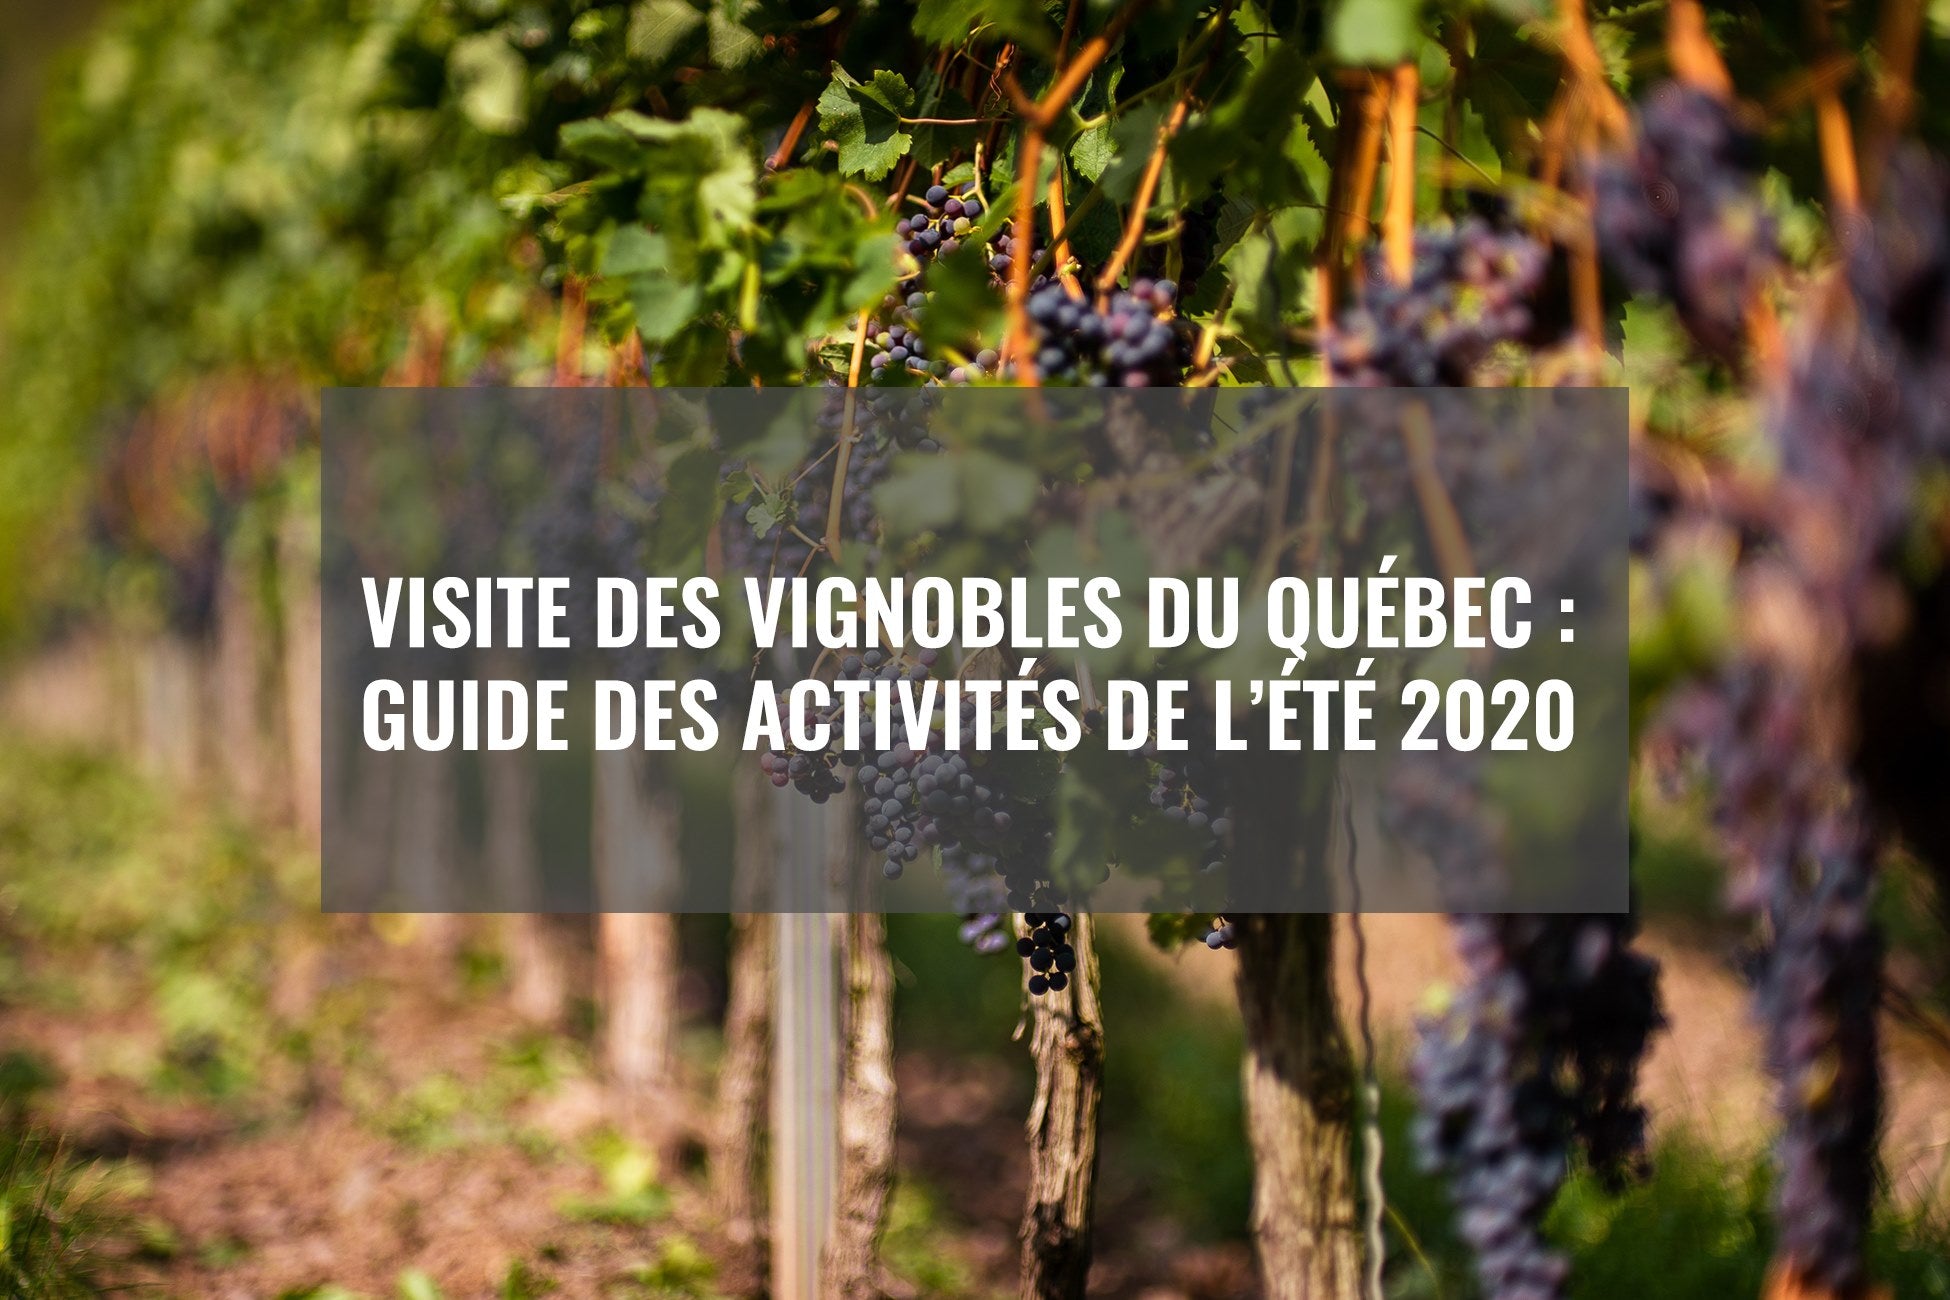 Guide des activités des vignobles du Québec